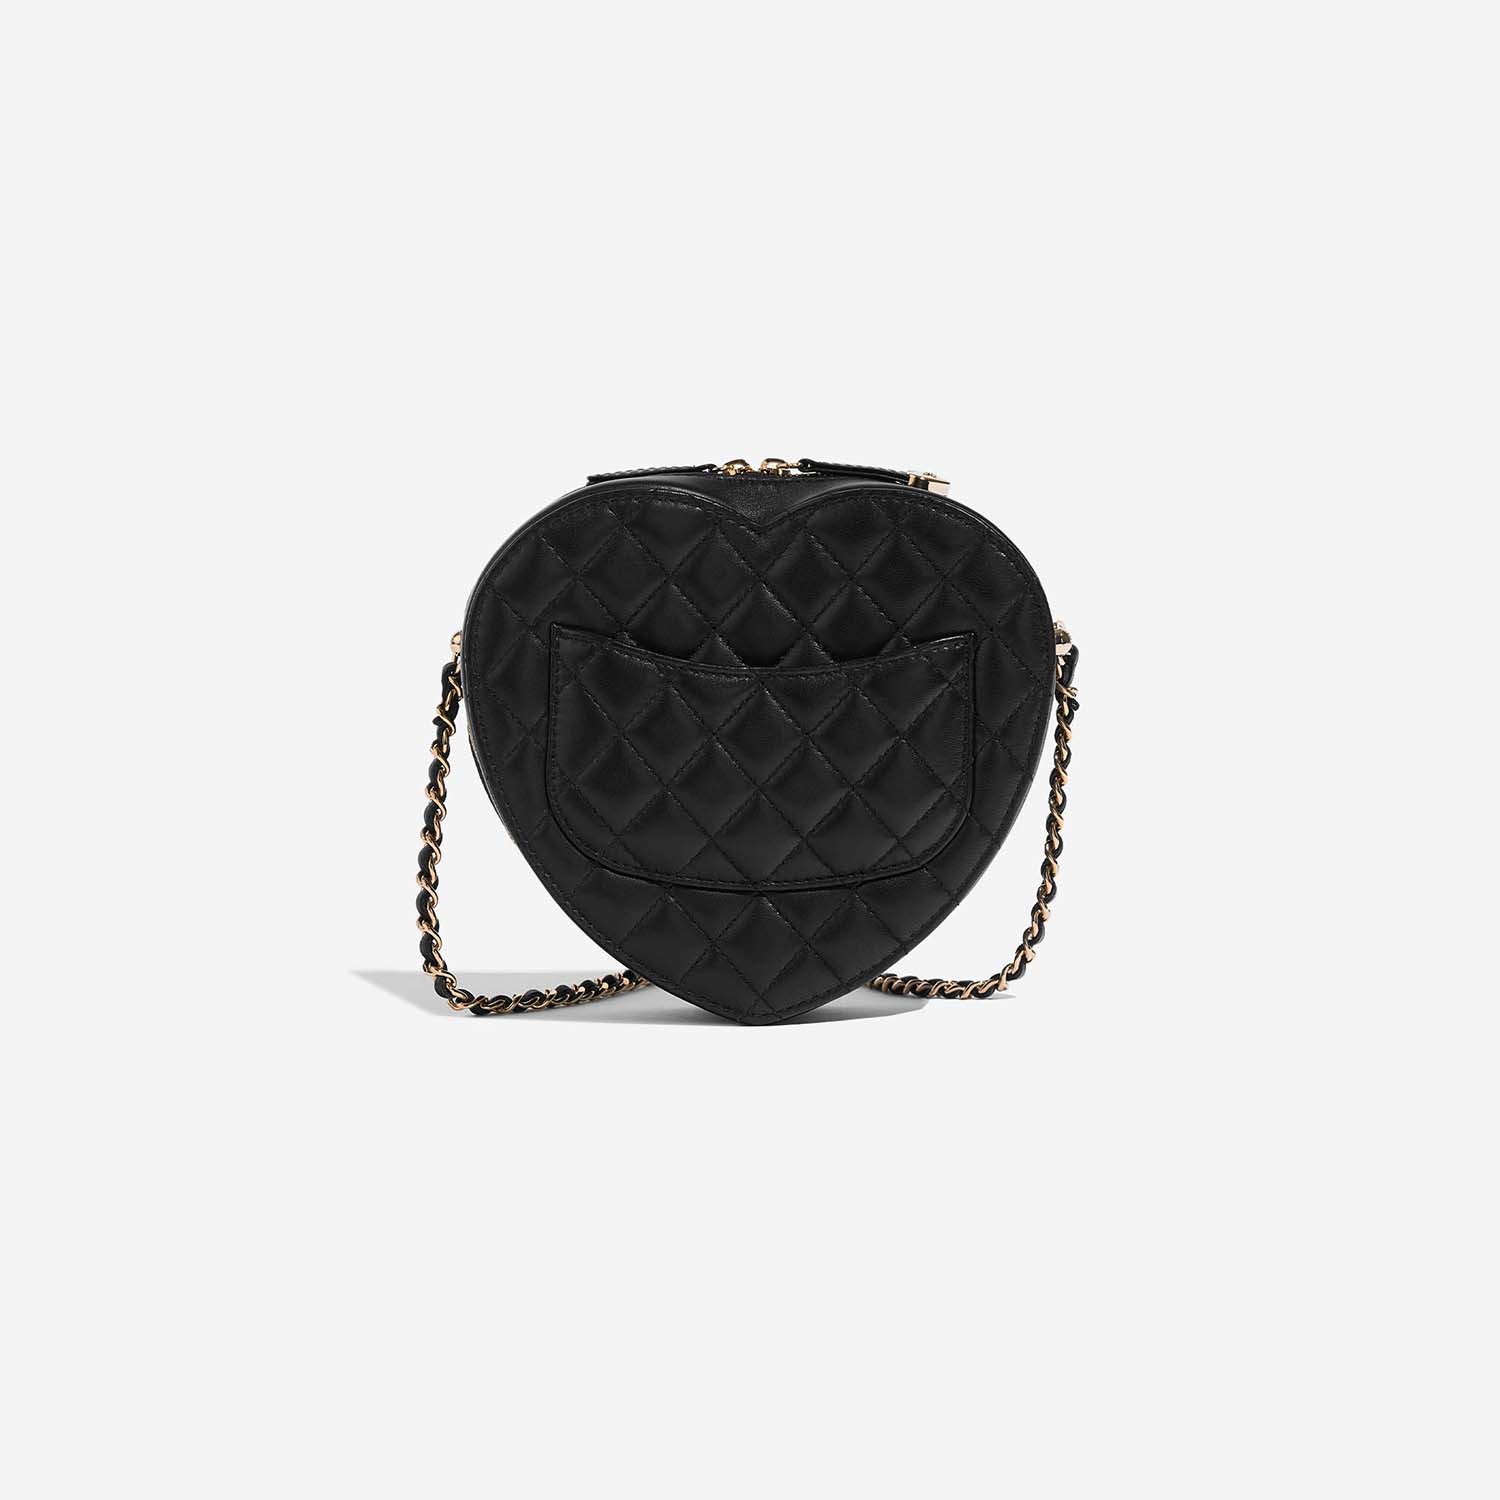 Chanel TimelessHeart Medium Black Back | Verkaufen Sie Ihre Designer-Tasche auf Saclab.com